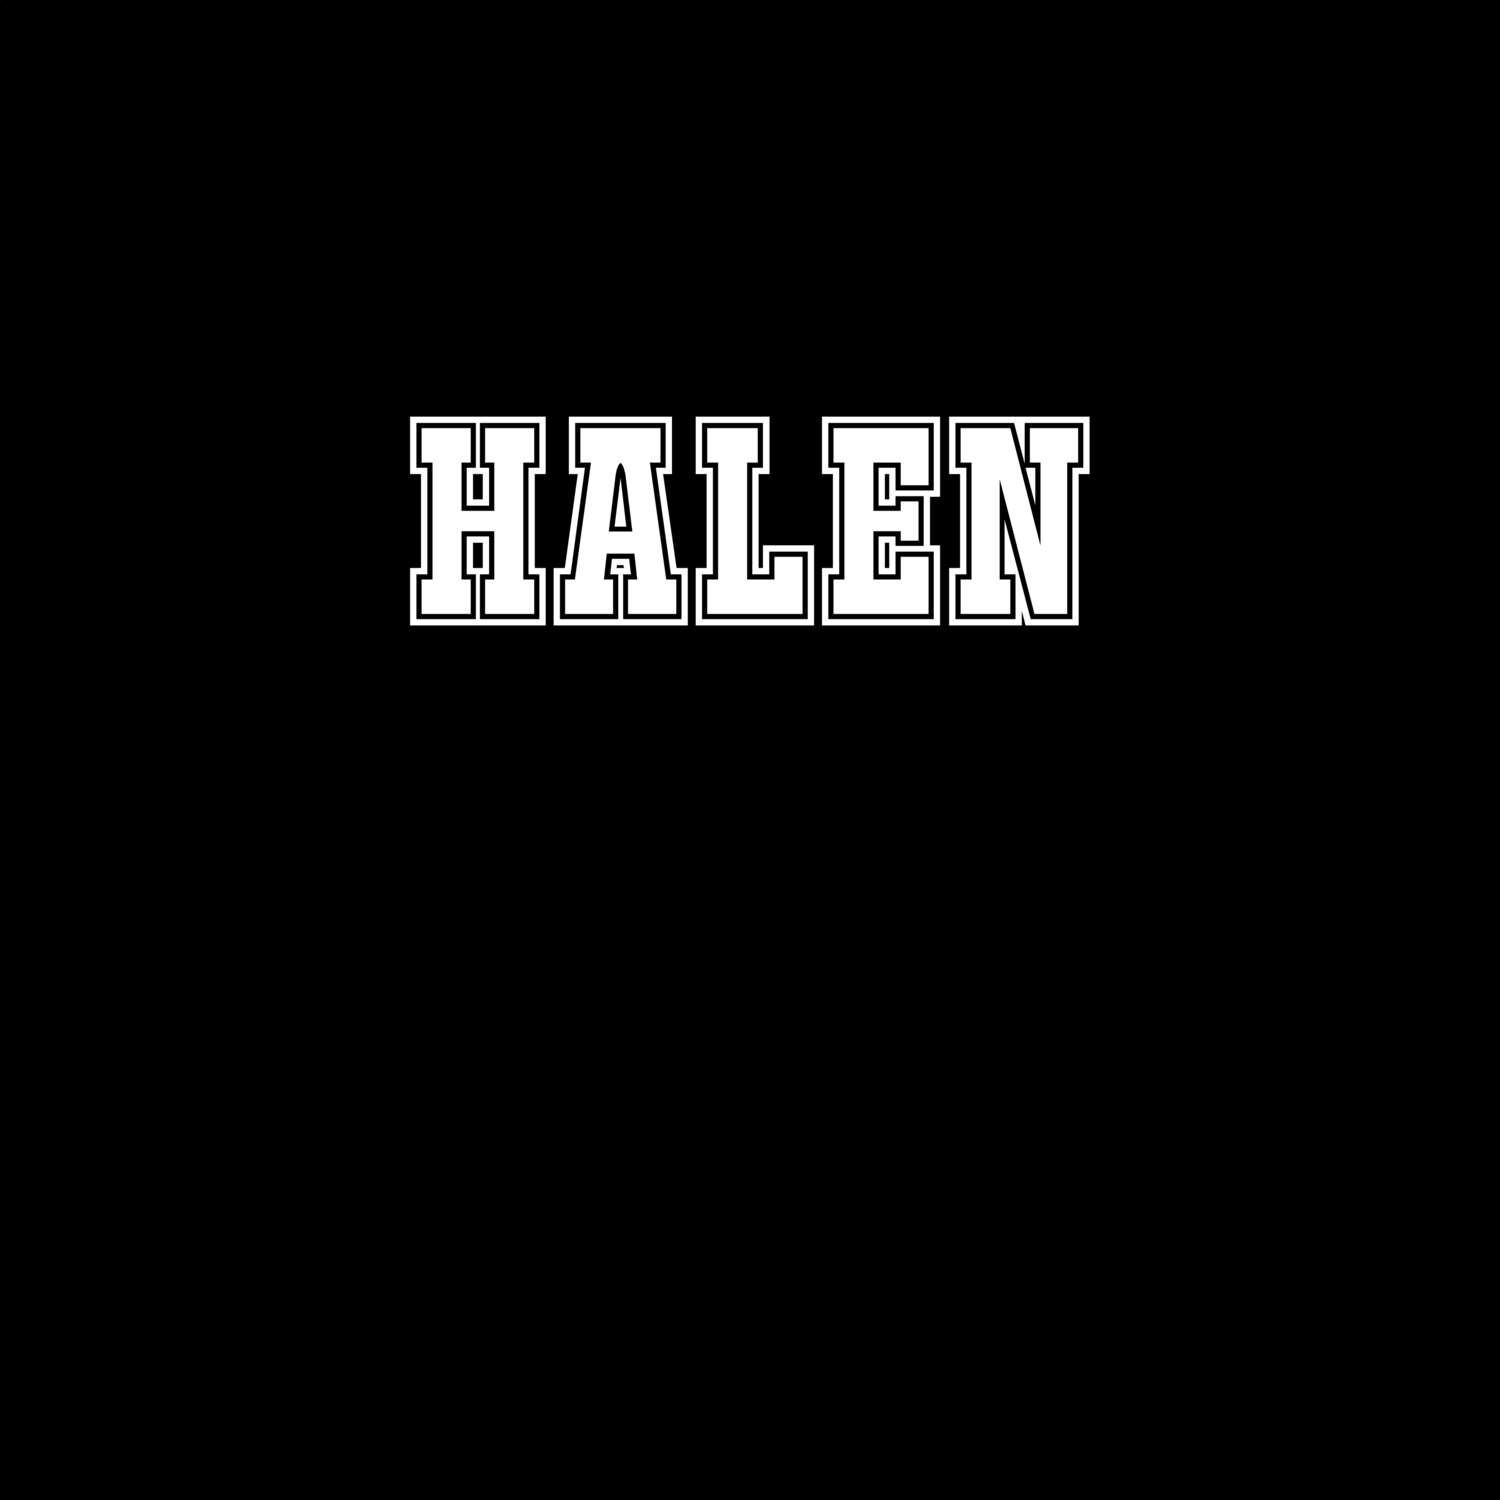 Halen T-Shirt »Classic«